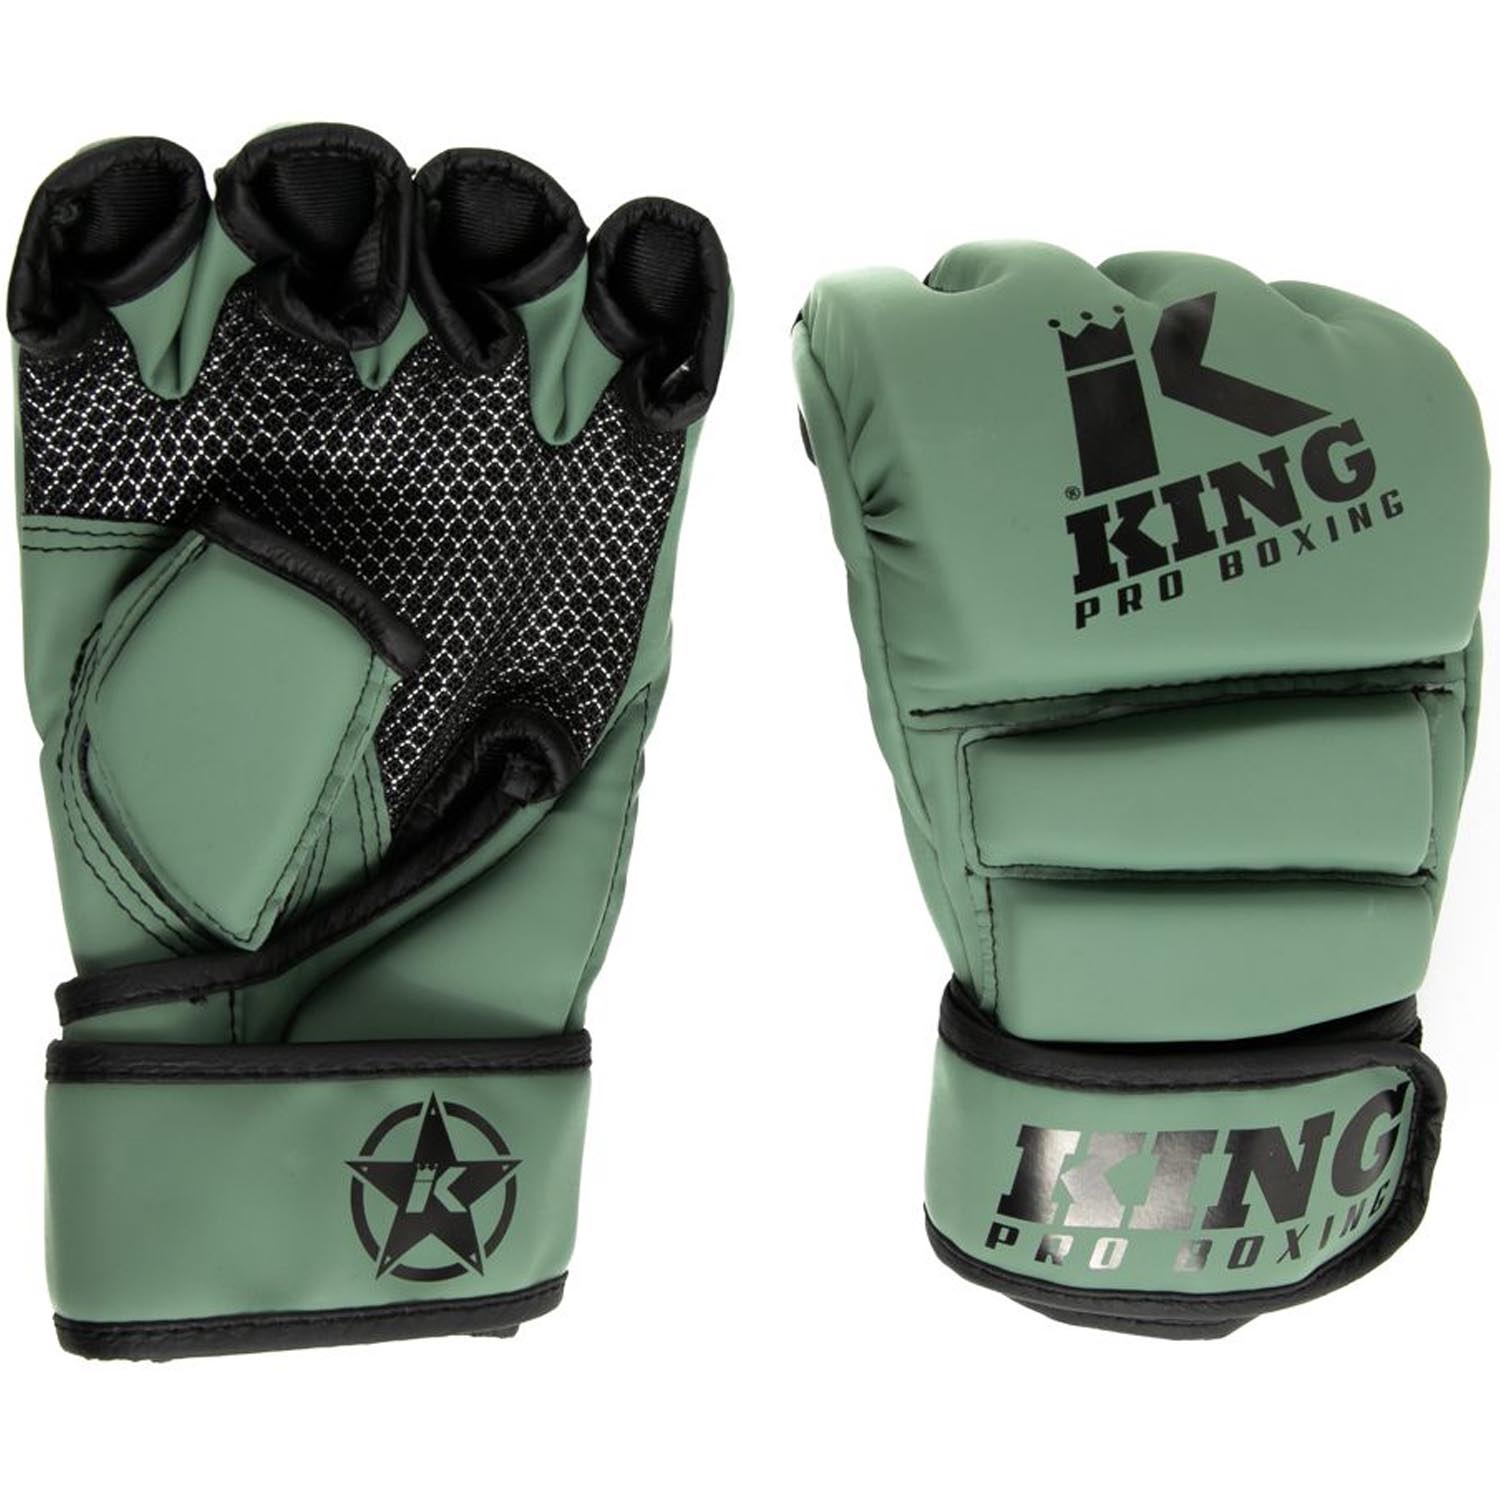 KING PRO BOXING MMA Handschuhe, Revo 3, khaki